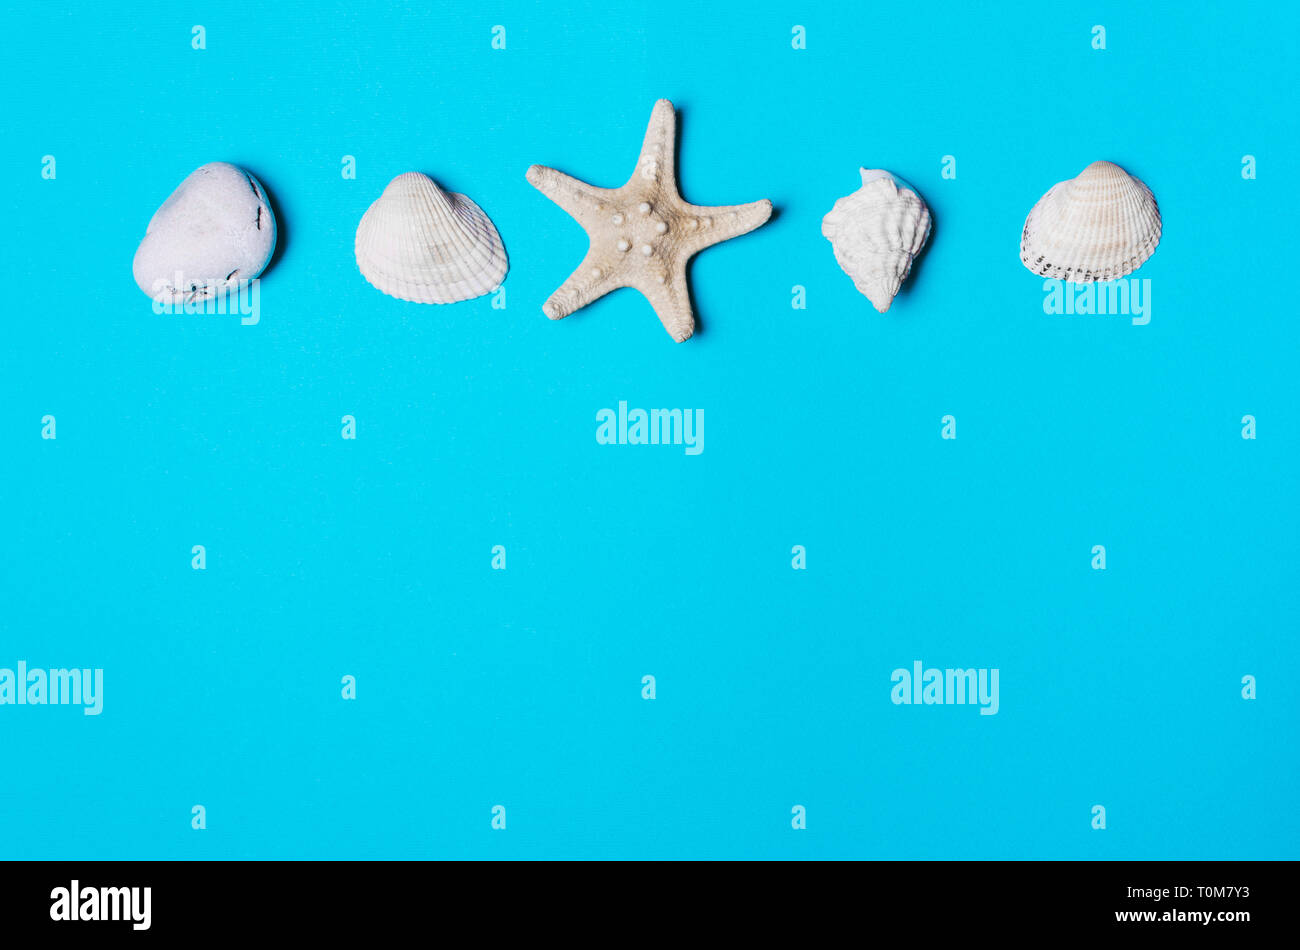 Shell, pebble, étoiles sur un fond bleu. La notion de repos, l'été Banque D'Images